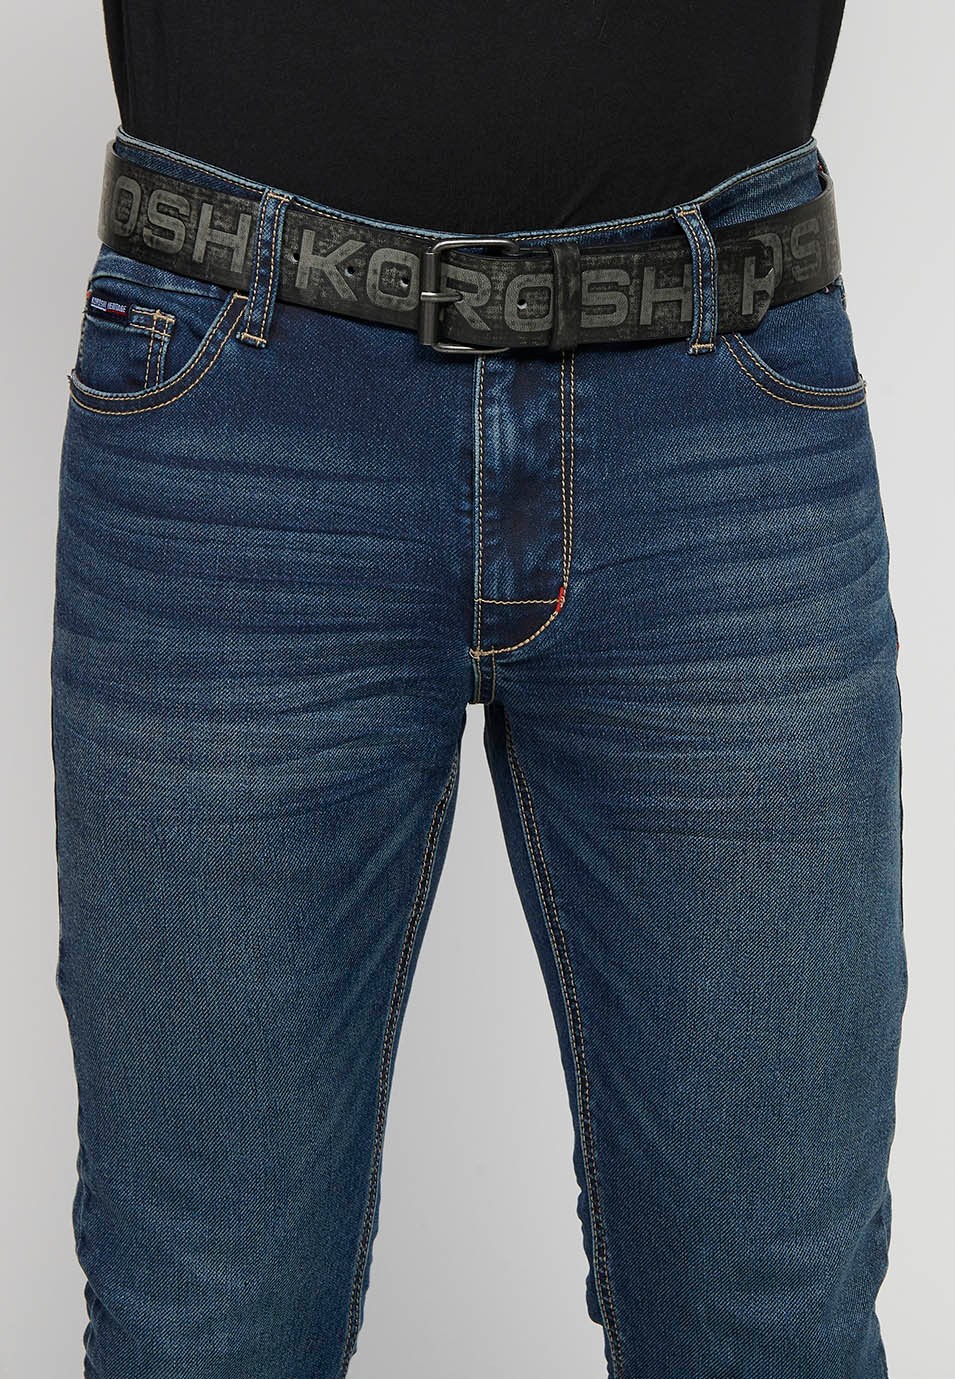 Cinturón de tres centímetros y medio de ancho con logo de Koröshi, hebilla y pasador color Negro para Hombre 4